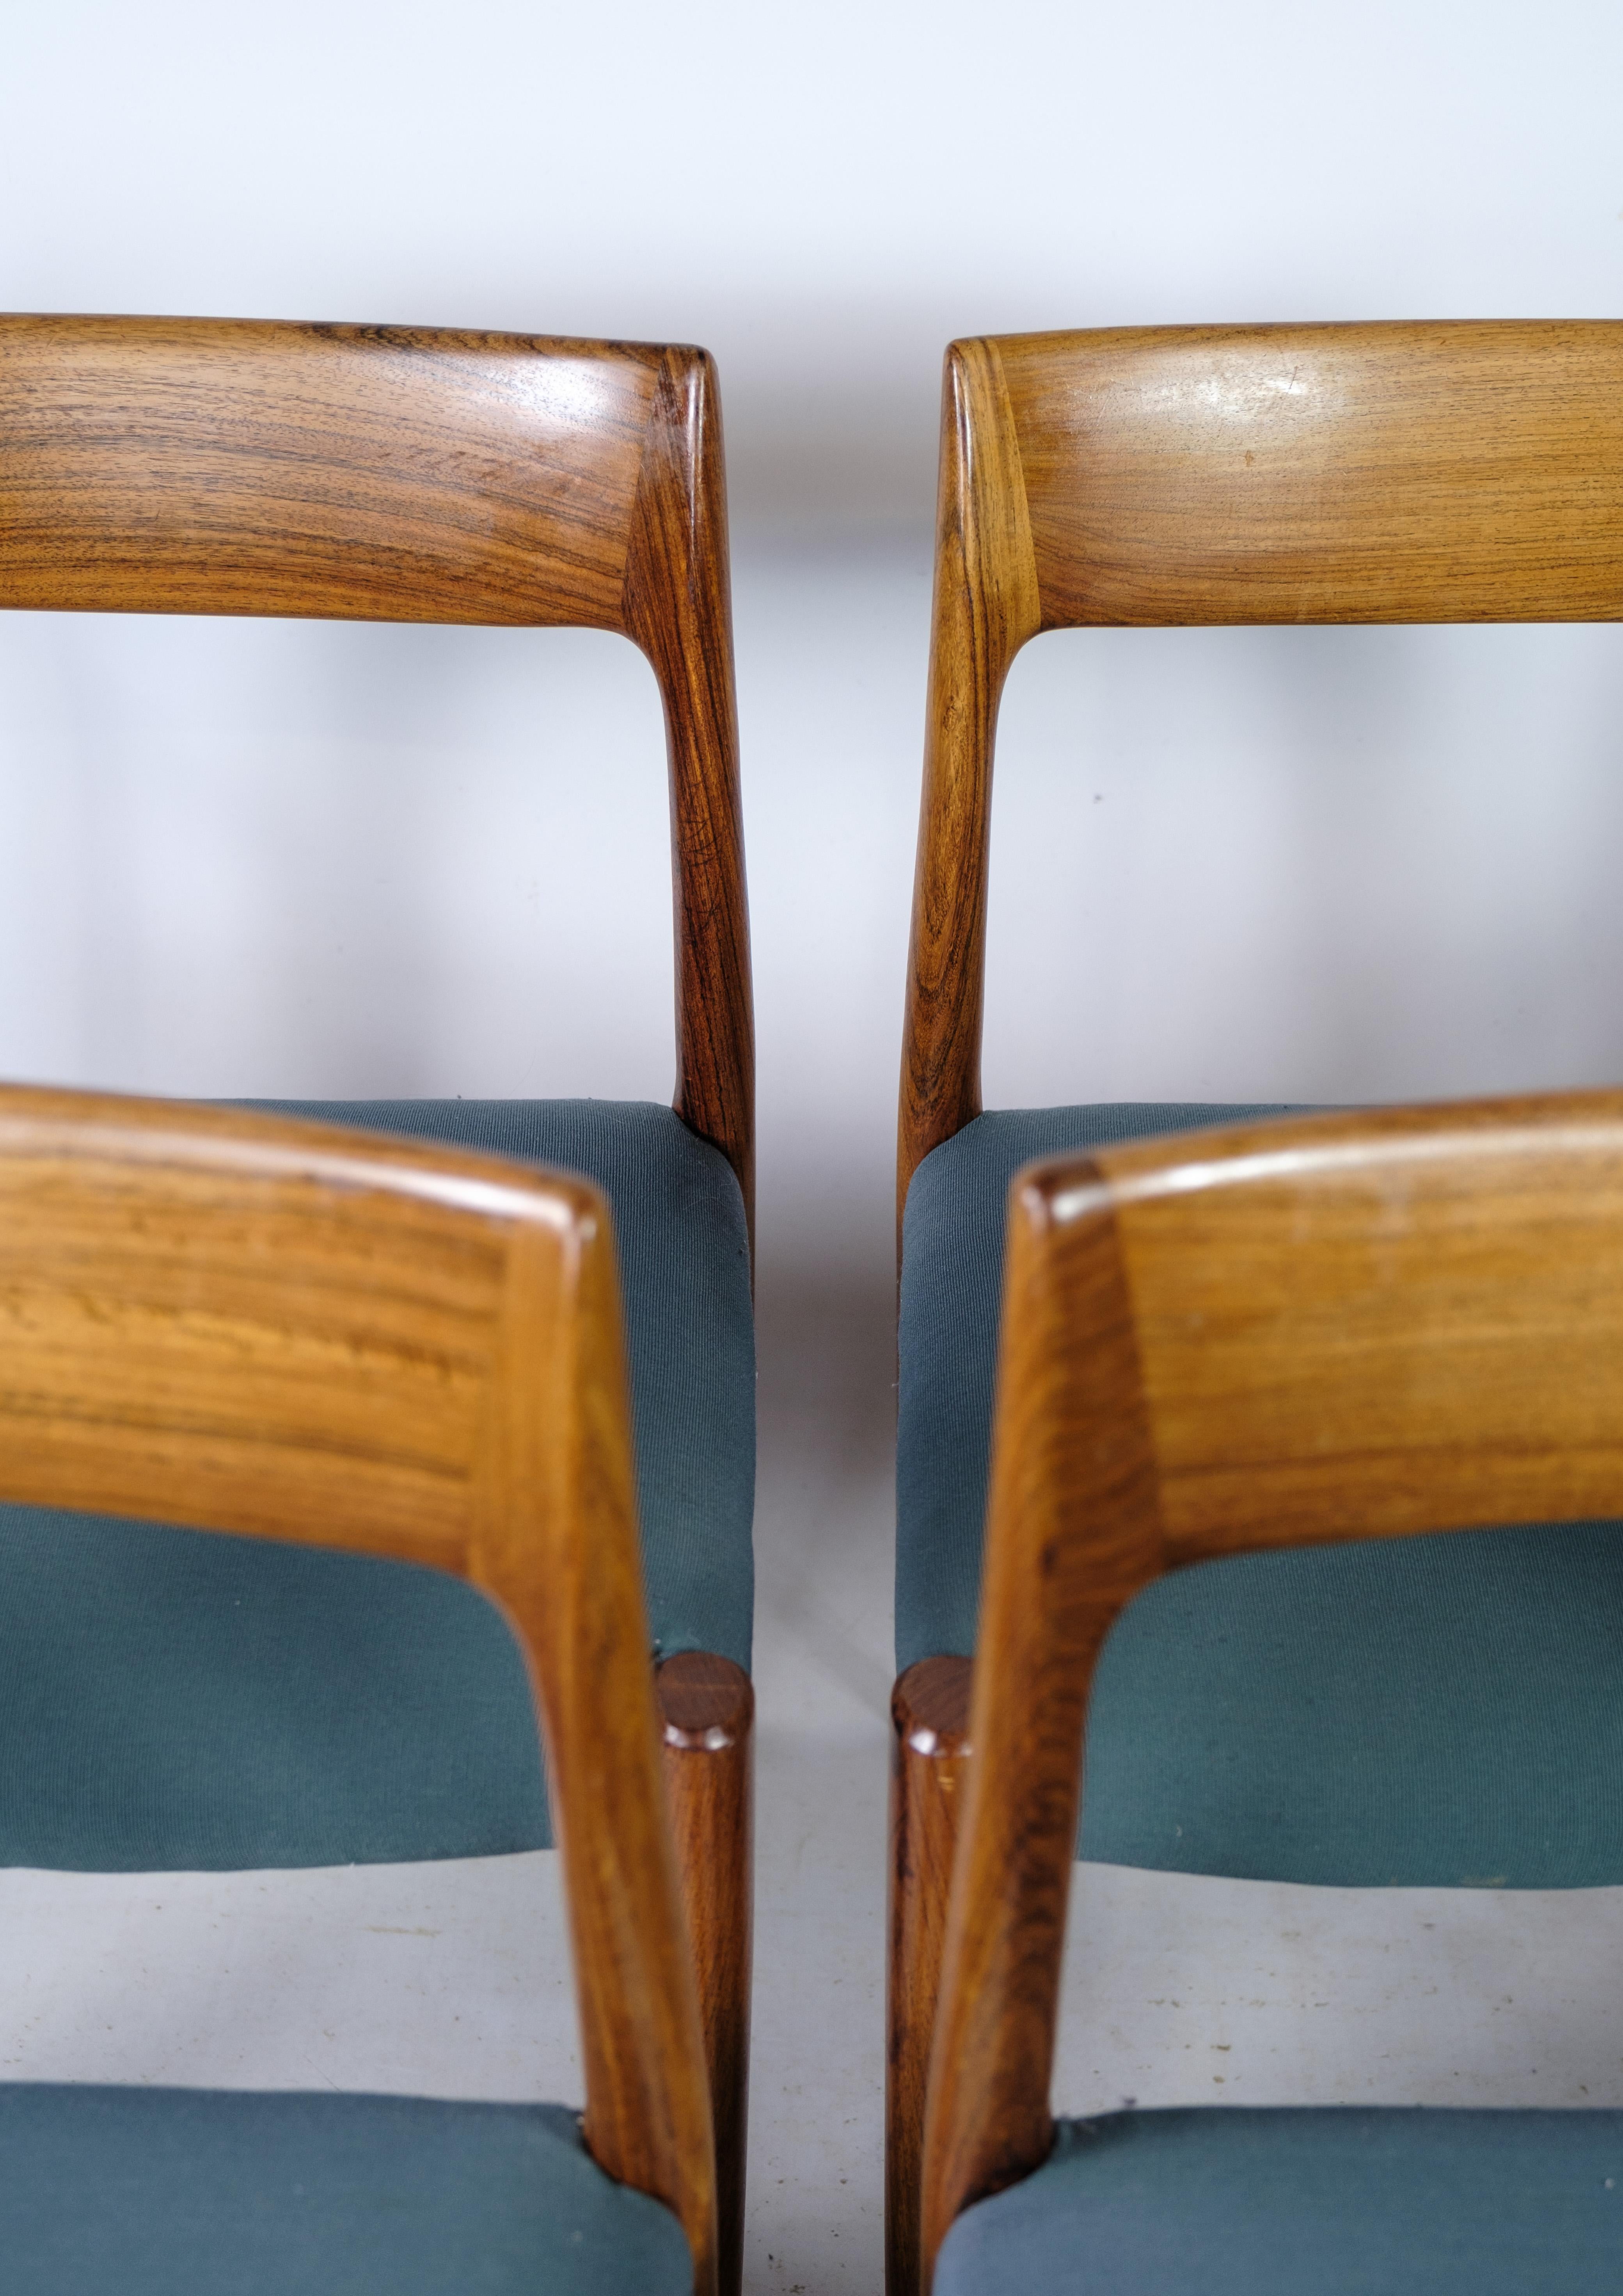 
Cet ensemble de six chaises de salle à manger, connu sous le nom de Design/One, est un exemple stupéfiant de l'excellence du design danois. Conçue par Niels Otto Møller et fabriquée par J.L.A. Møller's Møbelfabrik dans les années 1960, ces chaises